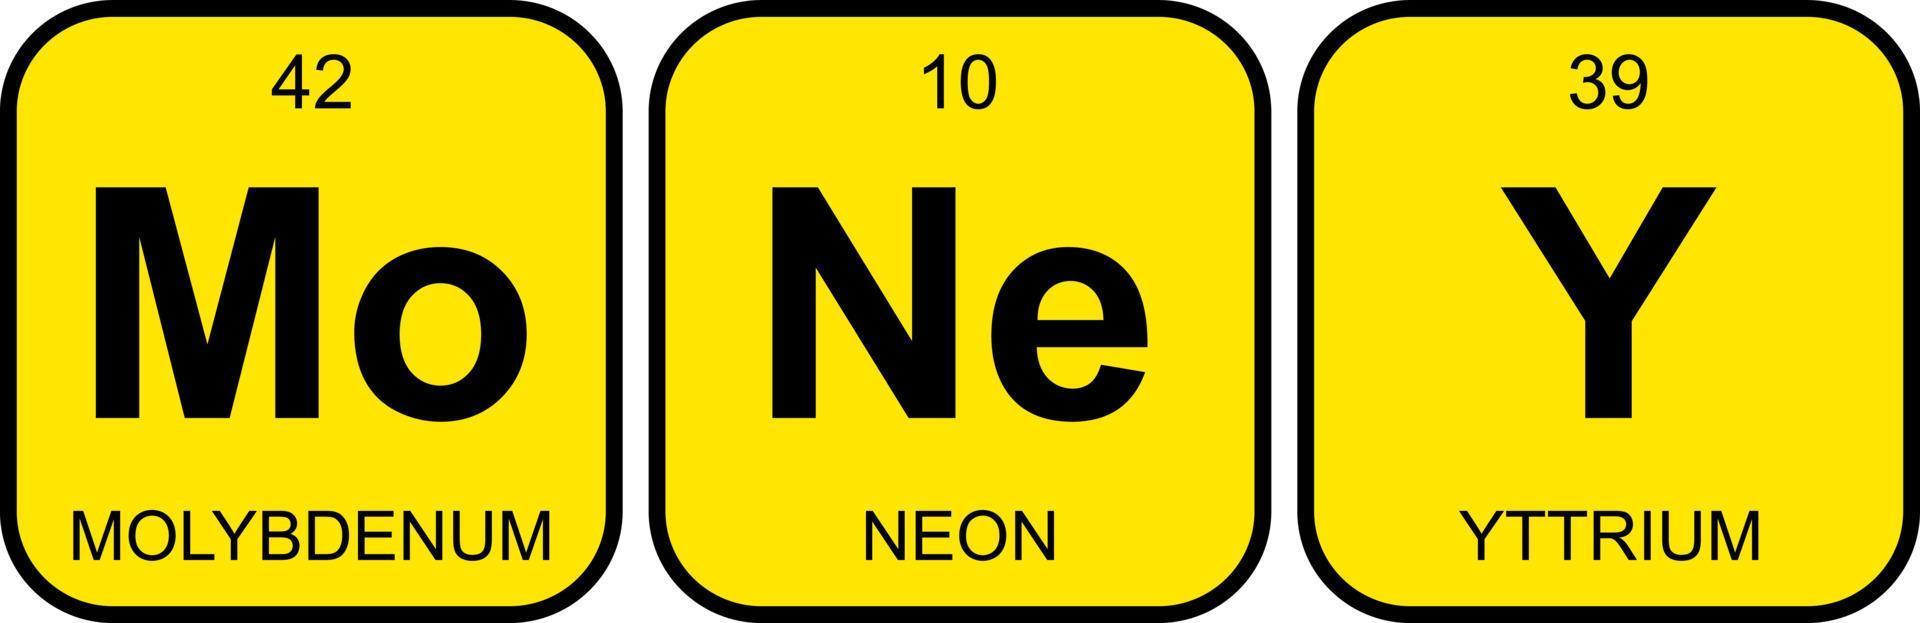 dinero. frase divertida con la tabla periódica de los elementos químicos sobre fondo amarillo. vector